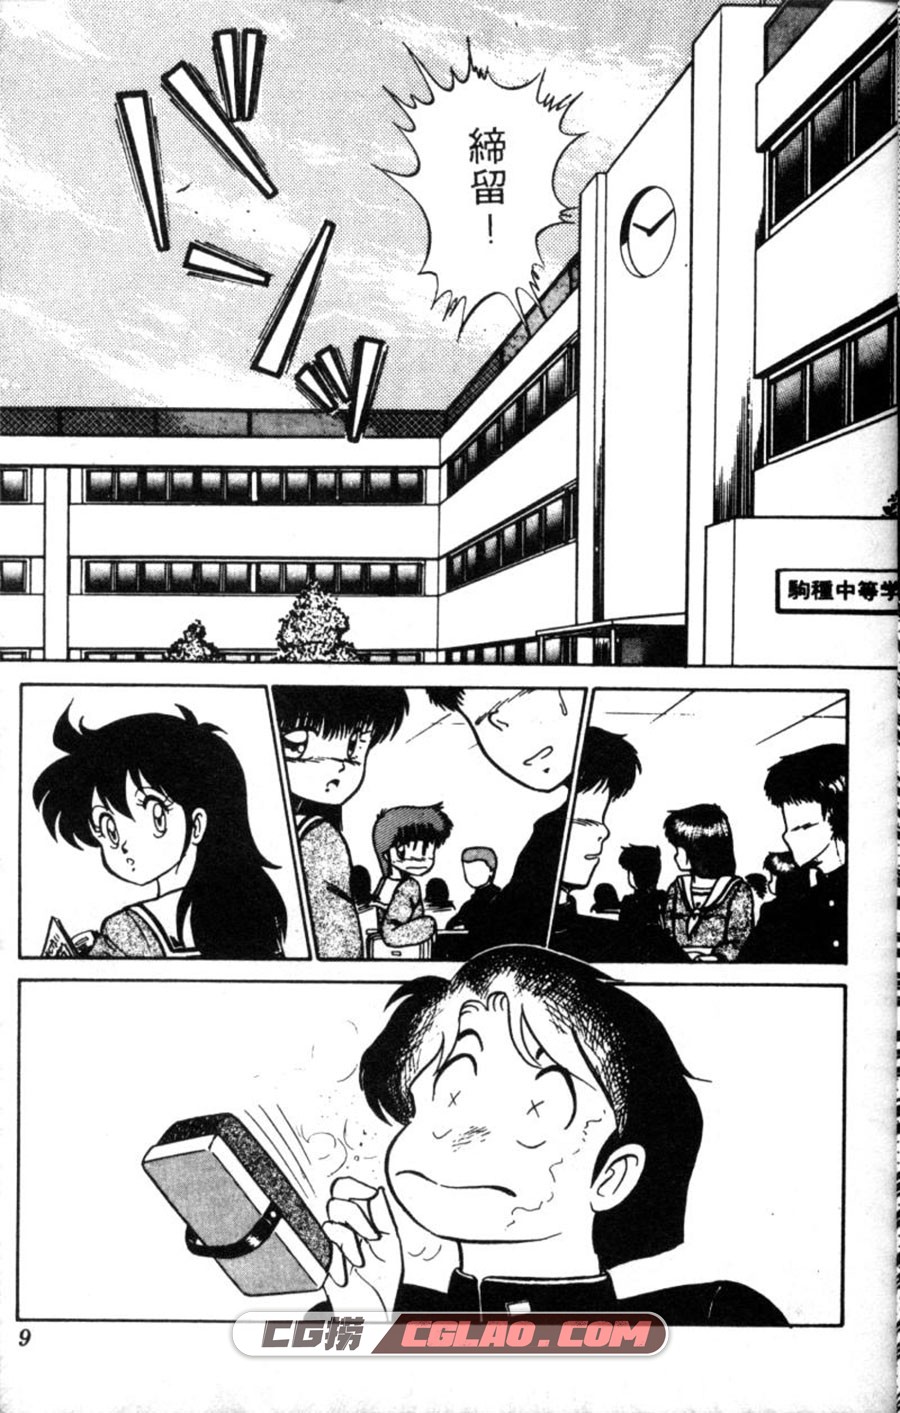 变身男孩 HiroshiAro 1-8卷 漫画全集完结下载 百度网盘下载,01-005.jpg